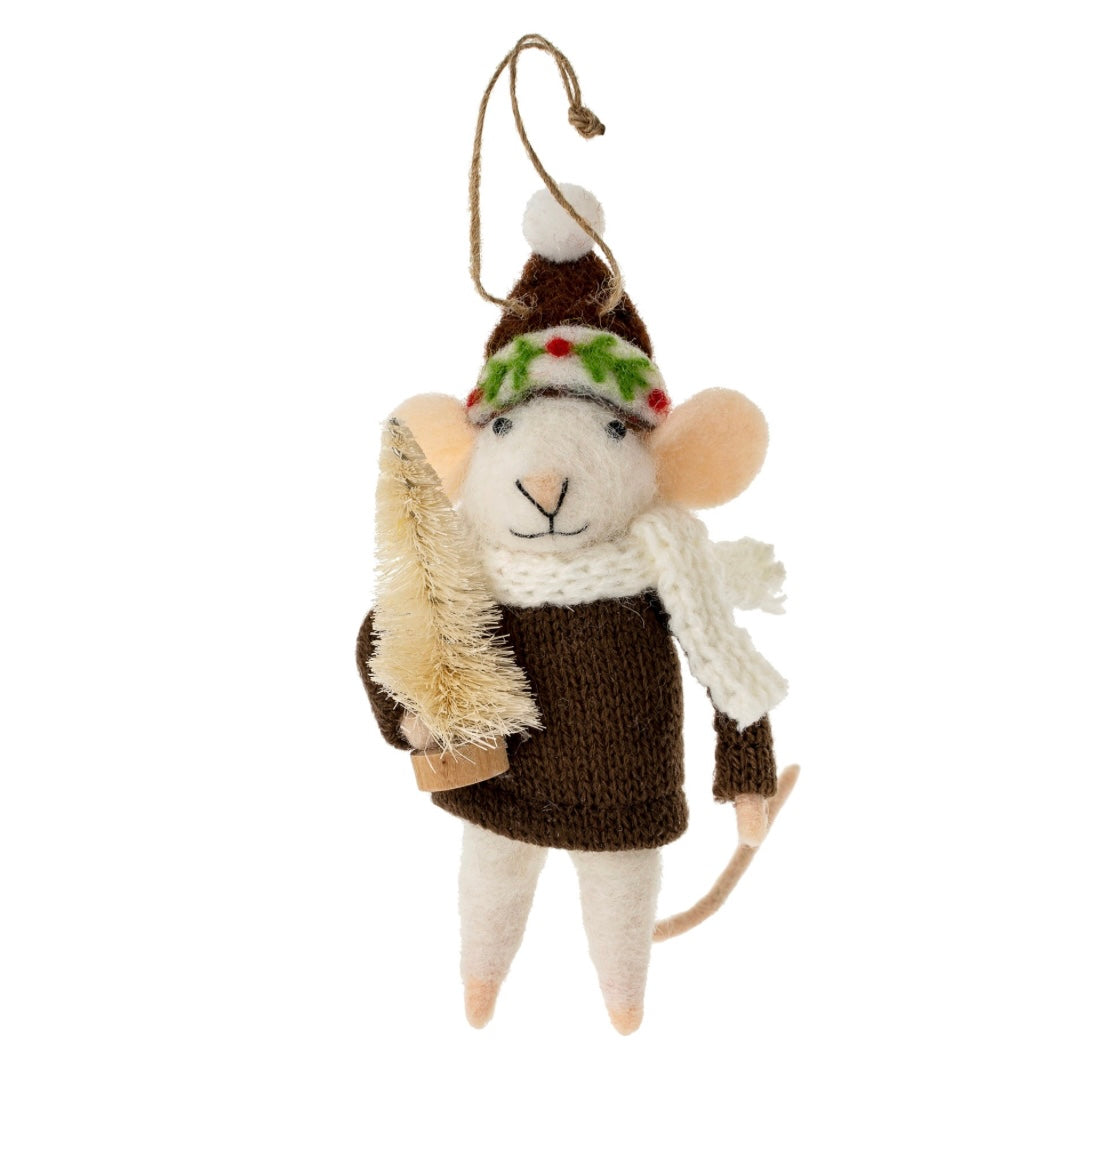 Felt Mouse Ornament: “Tis The Season Tabitha”